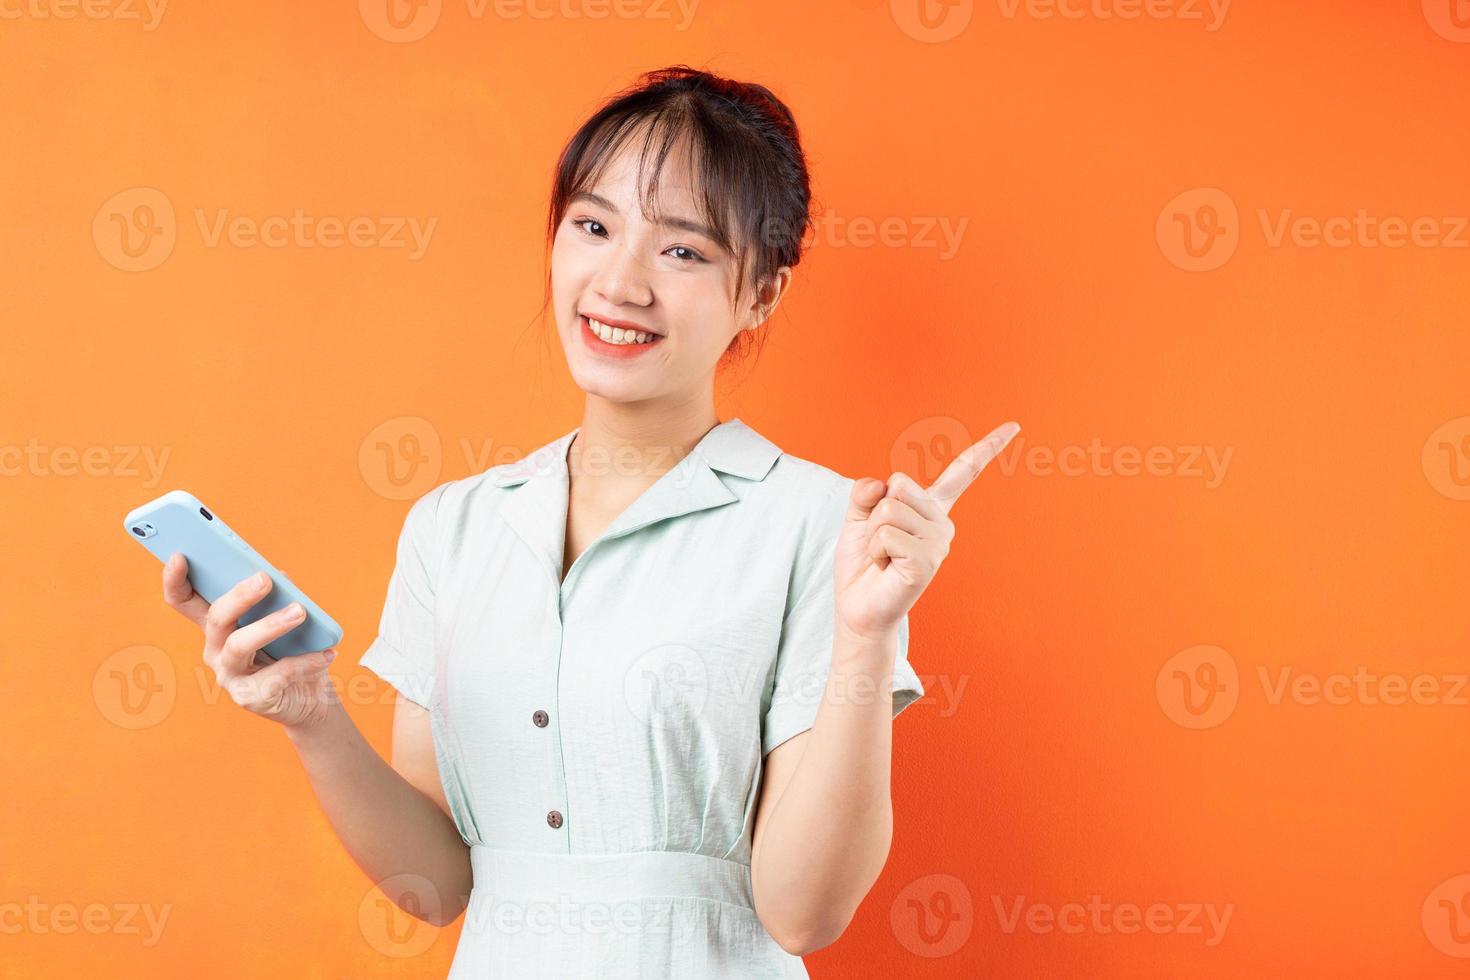 Porträt eines jungen Mädchens, das Telefon benutzt und nach rechts zeigt, isoliert auf orangem Hintergrund foto